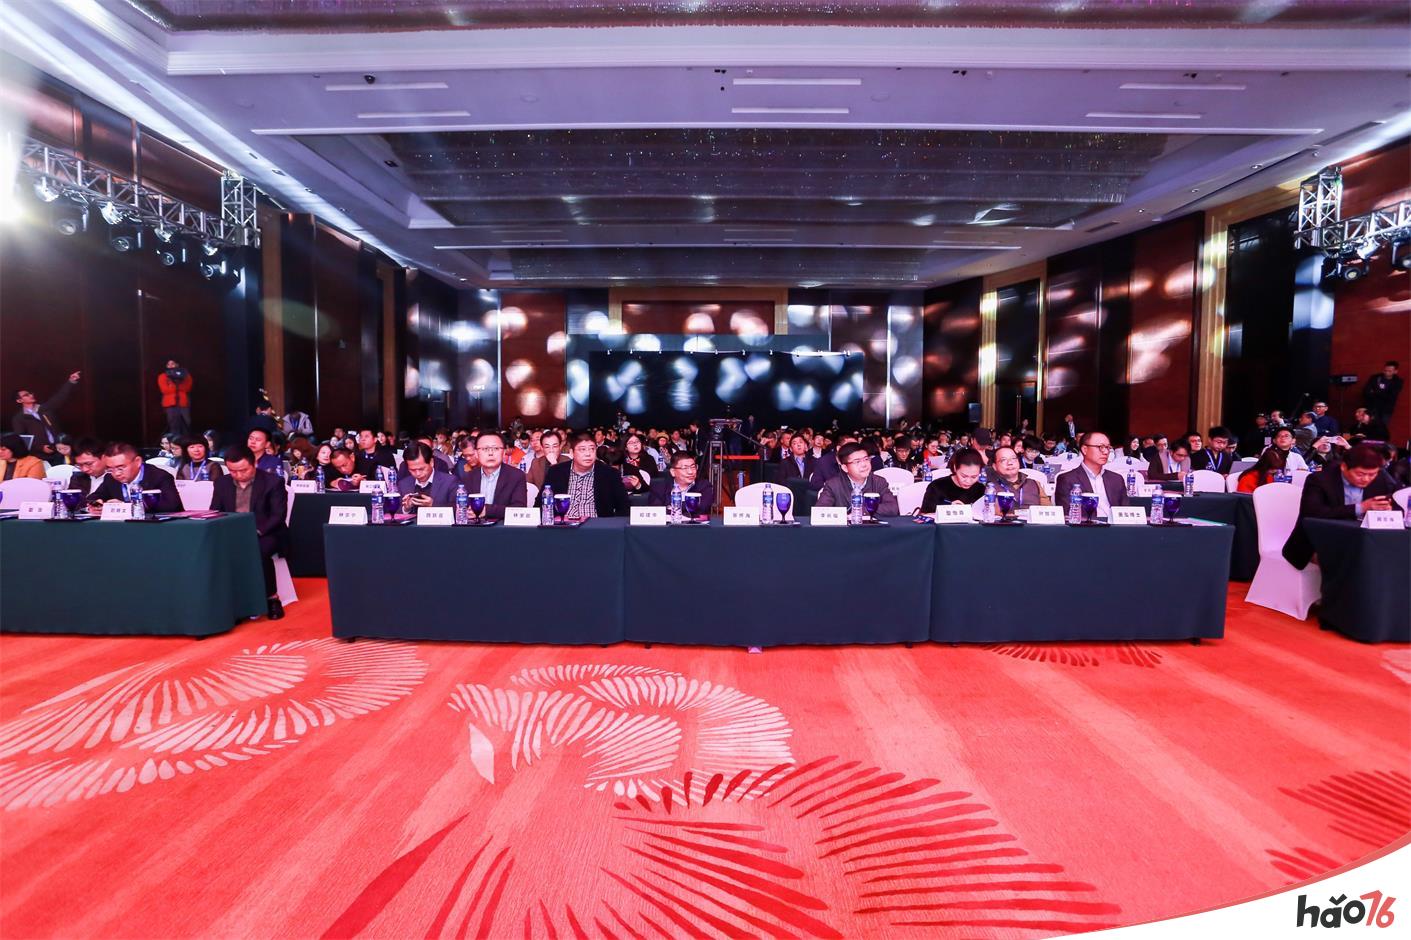 万象更新!第五届DEAS数字娱乐产业年度高峰会于厦门隆重召开!